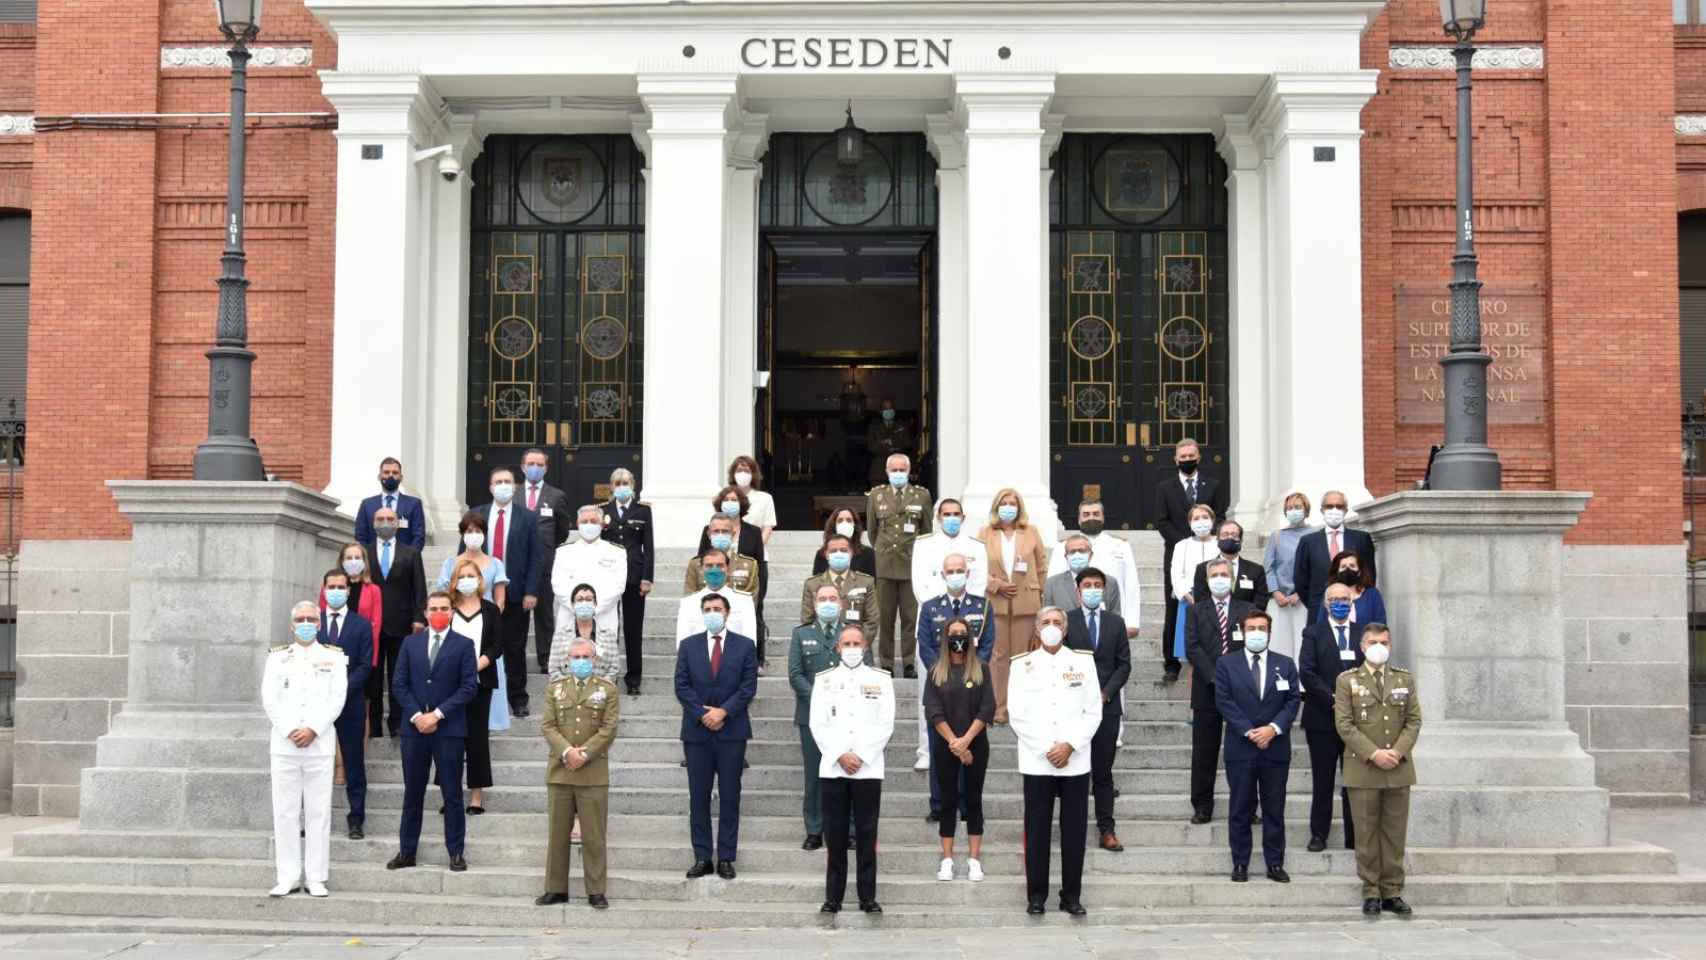 Míriam Nogueras, en el centro de la imagen, con mascarilla negra, el 14 de septiembre de 2020, durante la presentación del Curso de Defensa Nacional en el Ceseden (Madrid).